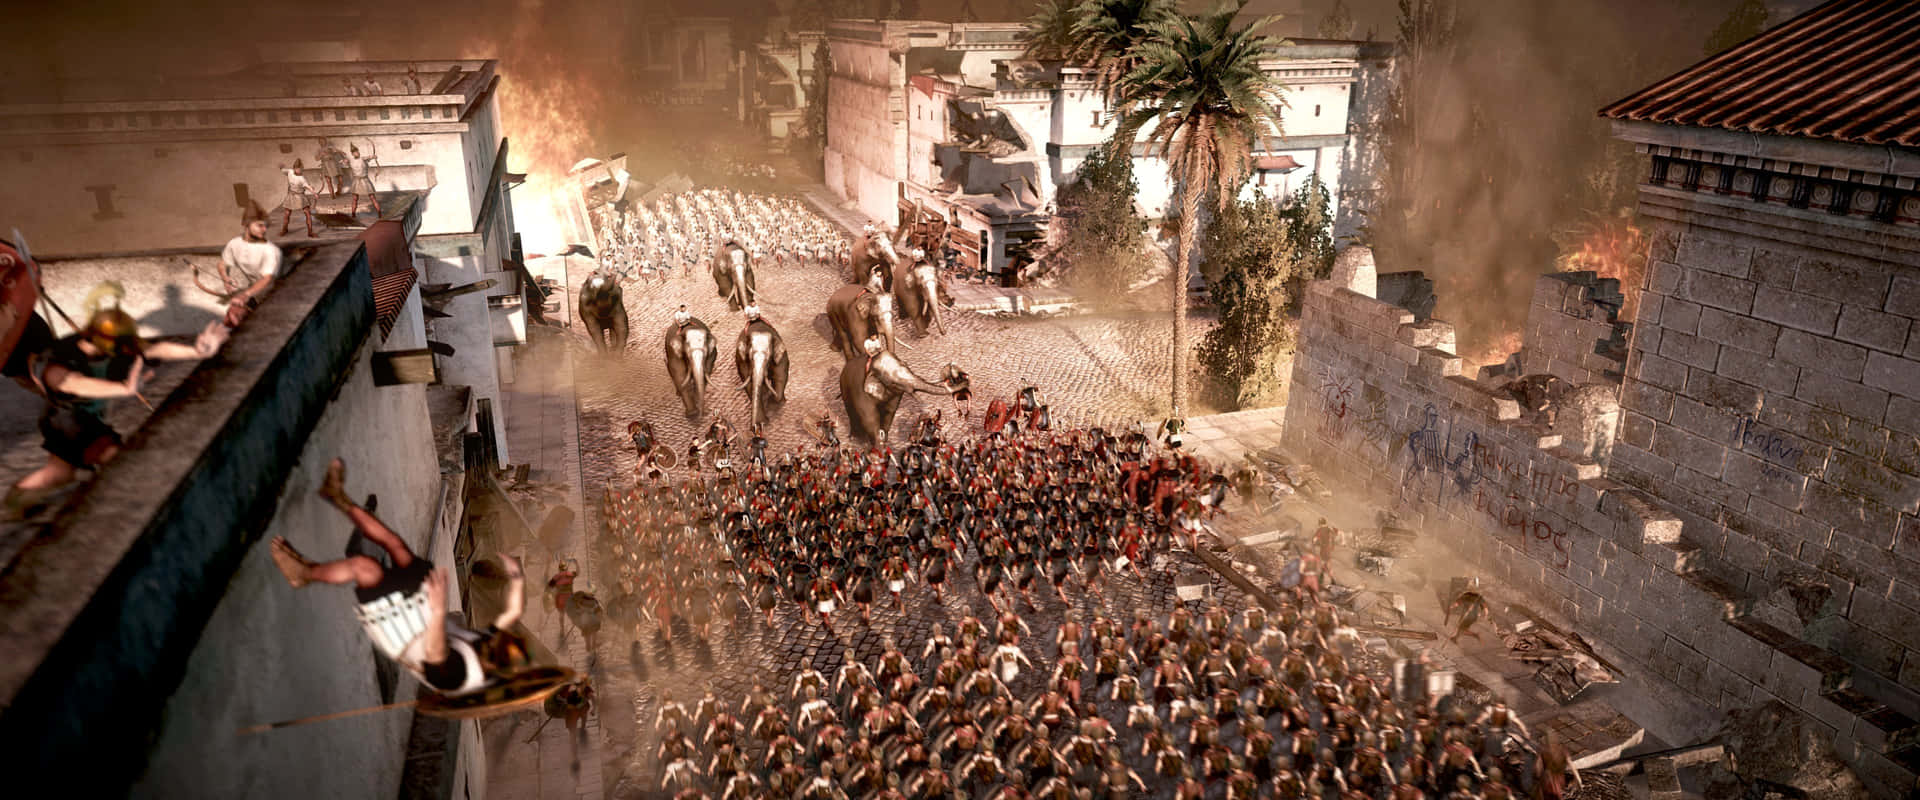 Erlebedie Wahre Macht Des Antiken Rom In Total War Rome 2.